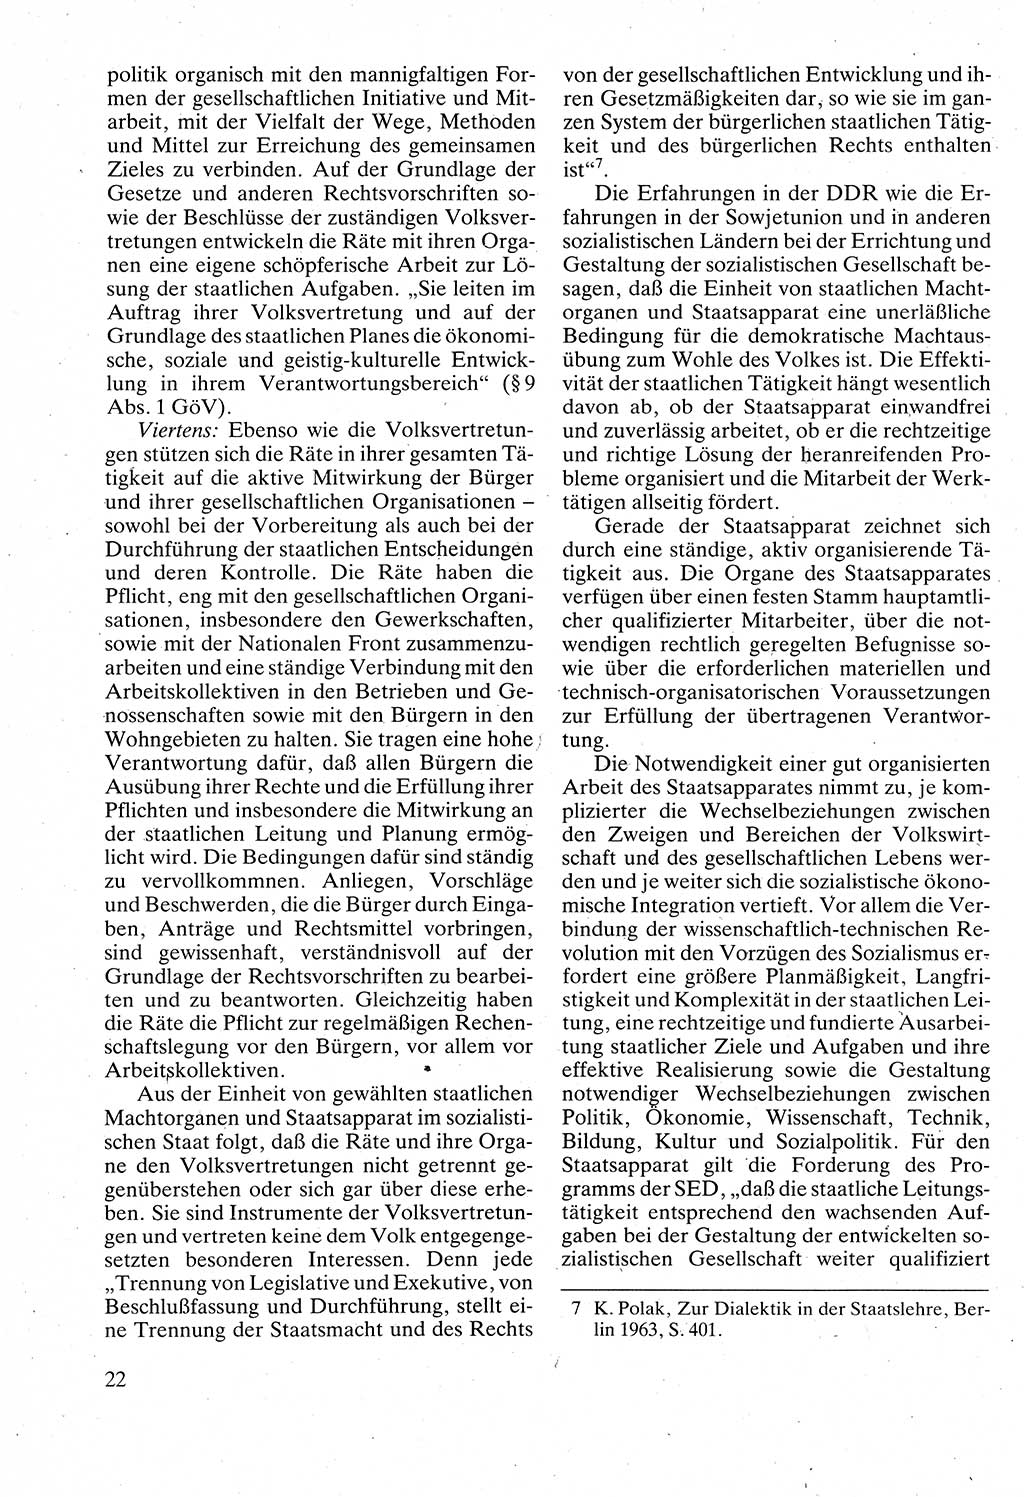 Verwaltungsrecht [Deutsche Demokratische Republik (DDR)], Lehrbuch 1988, Seite 22 (Verw.-R. DDR Lb. 1988, S. 22)